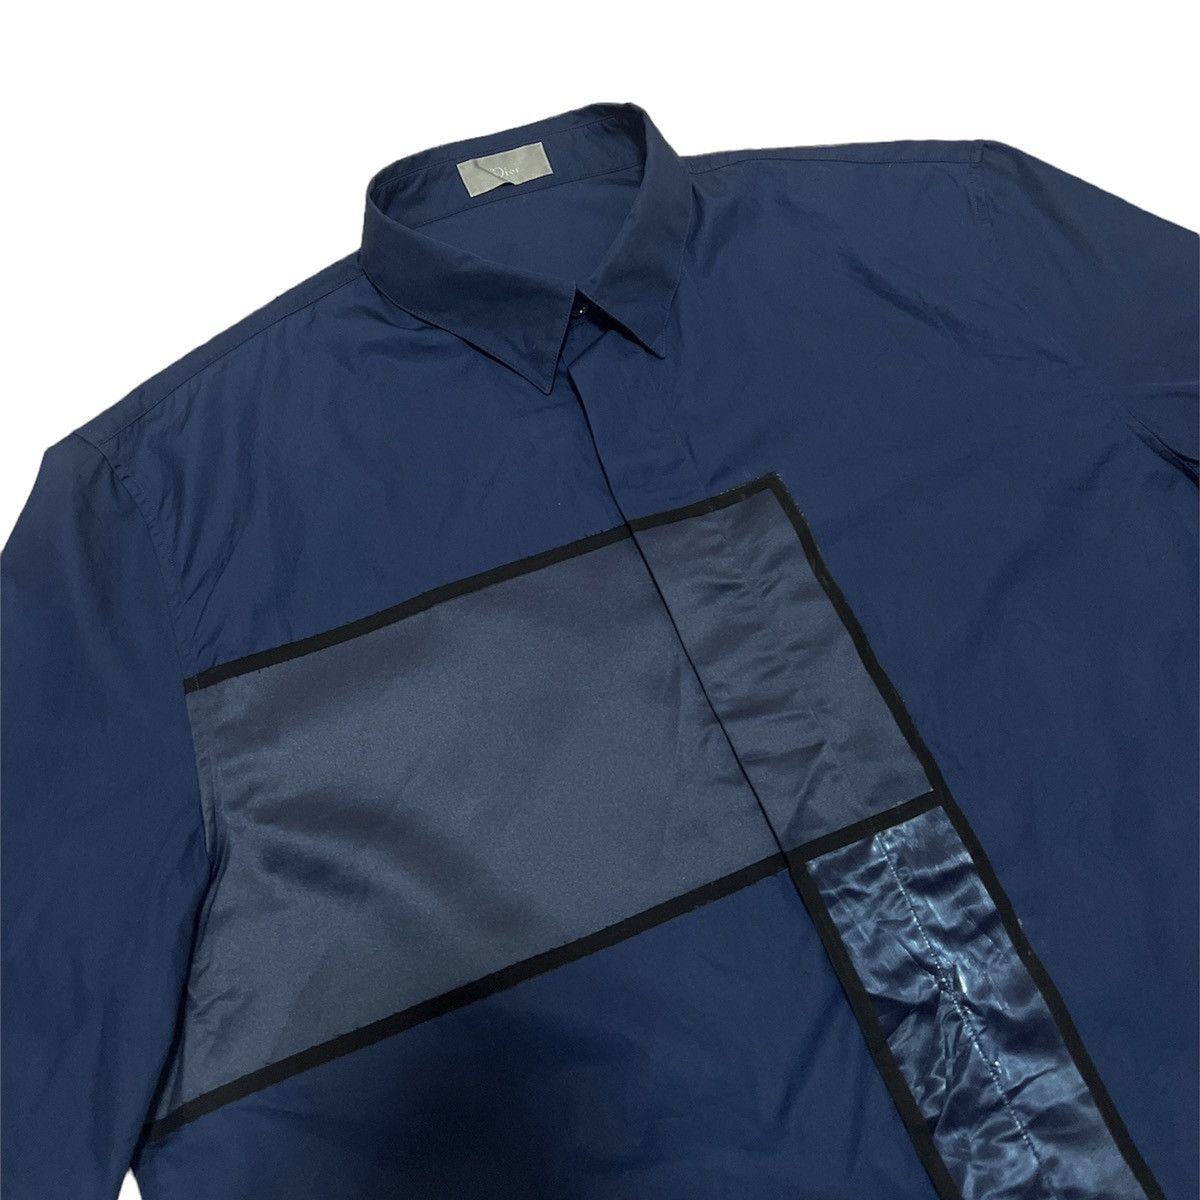 SS14 Dior Homme Kris Van Assche Haute Patchwork Shirt - 7